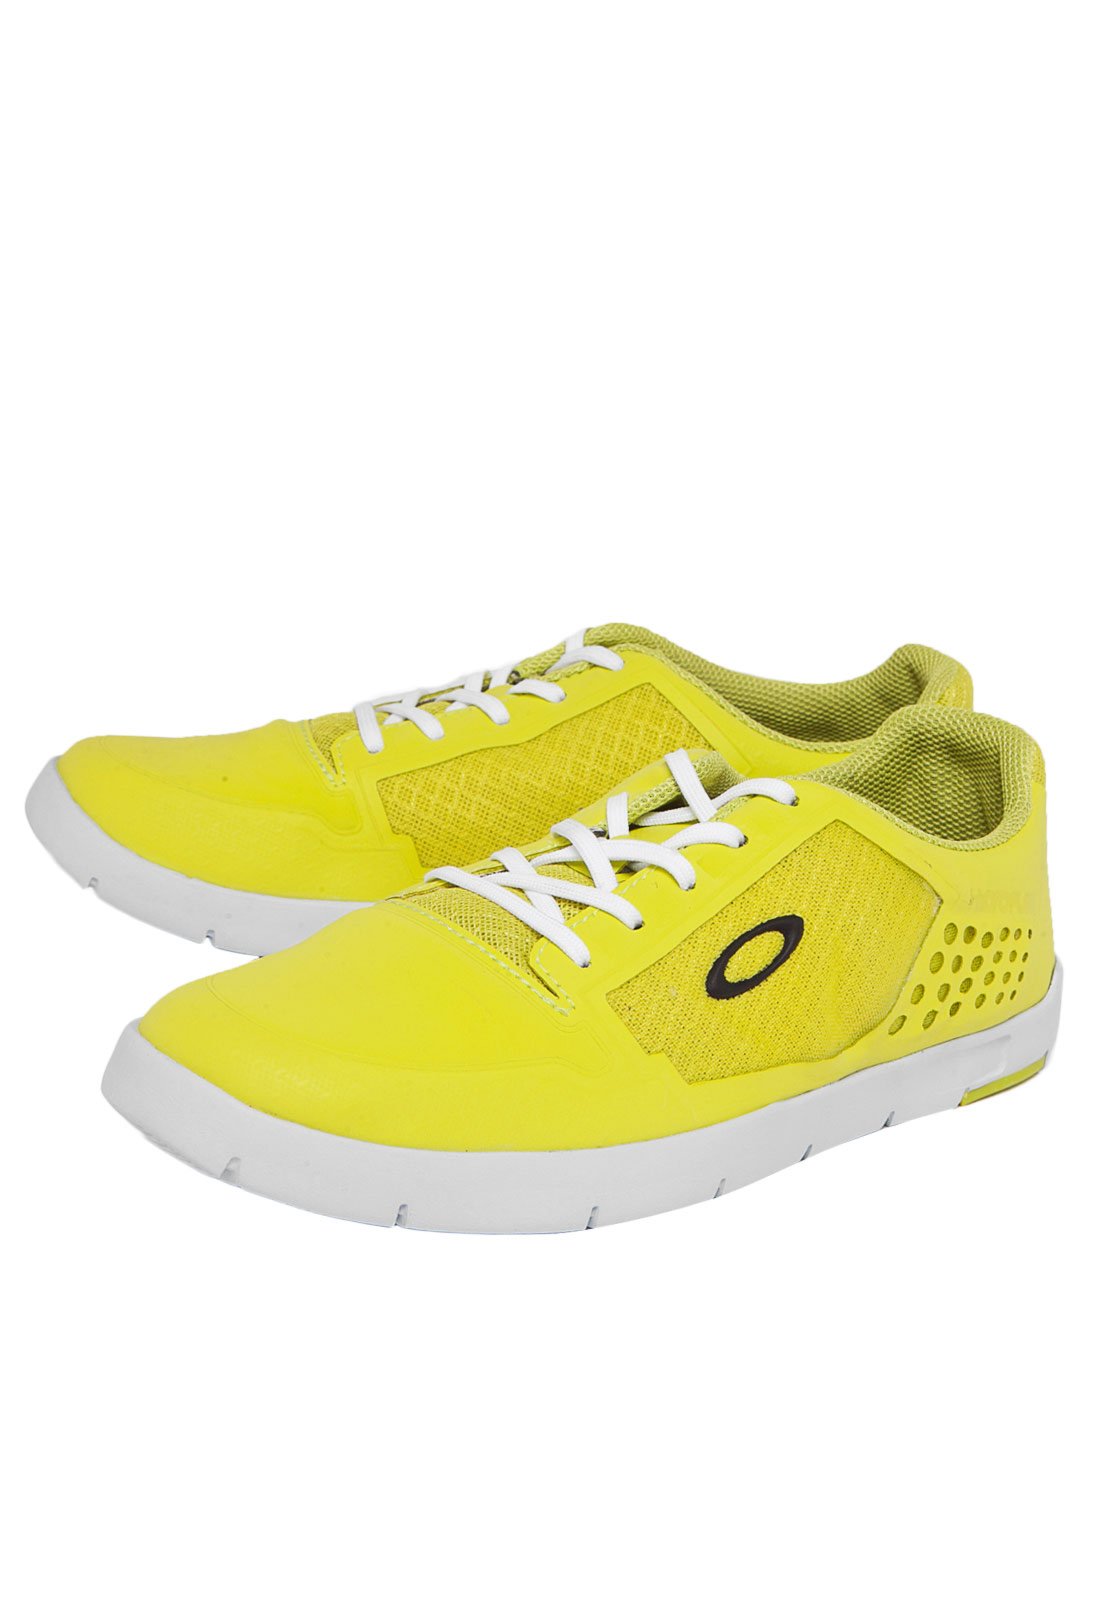 tenis oakley amarelo